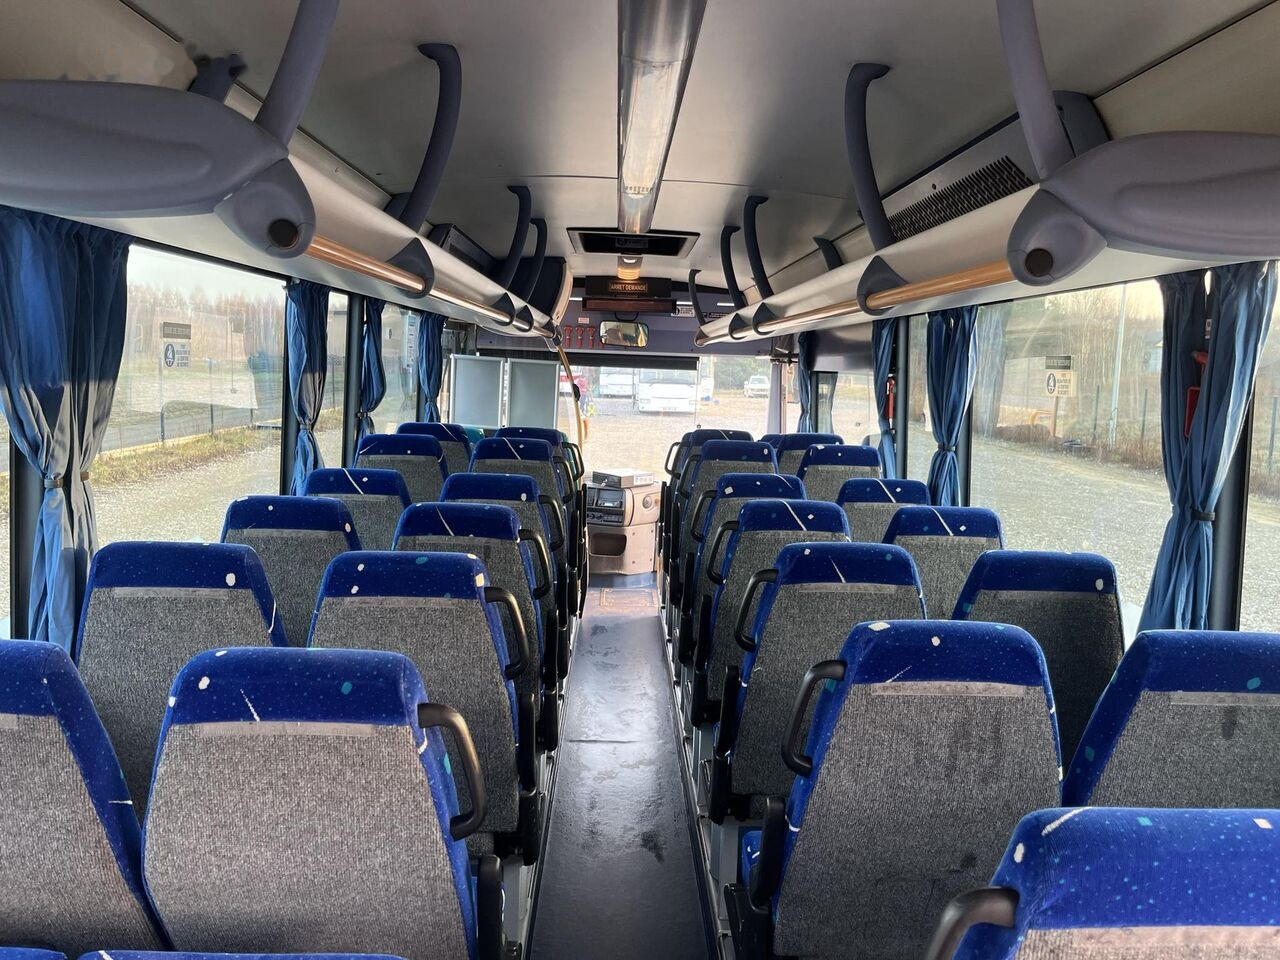 Turistinis autobusas Irisbus Crossway/Klimatyzacja/Manual/60+29 miejsc/Euro 5: foto 20